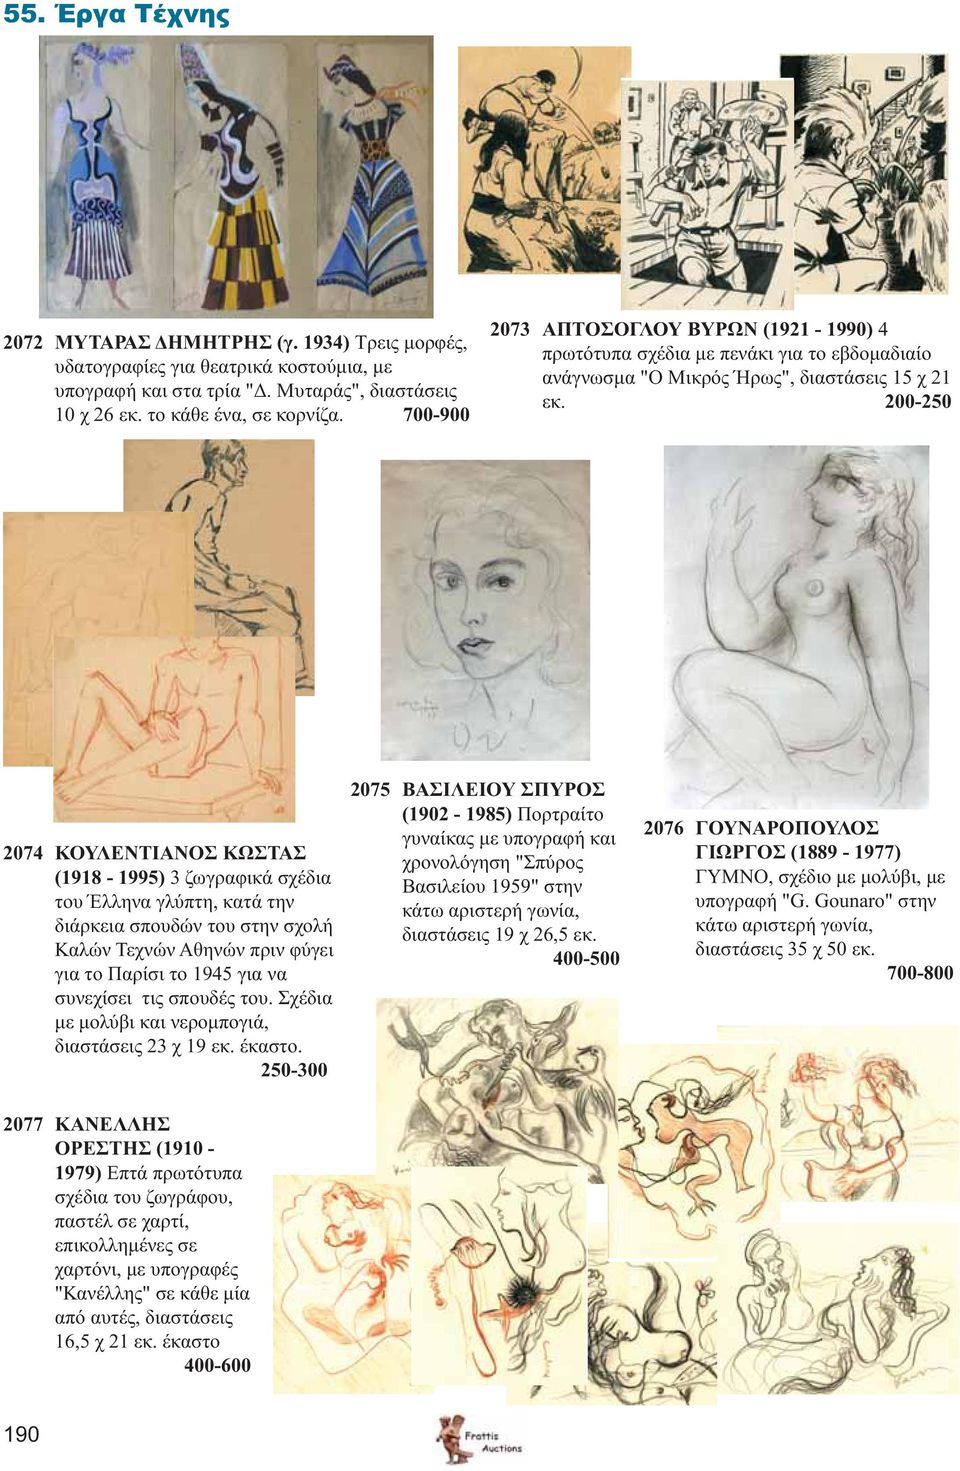 200-250 2074 ΚΟΥΛΕΝΤΙΑΝΟΣ ΚΩΣΤΑΣ (1918-1995) 3 ζωγραφικά σχέδια του Έλληνα γλύπτη, κατά την διάρκεια σπουδών του στην σχολή Καλών Τεχνών Αθηνών πριν φύγει για το Παρίσι το 1945 για να συνεχίσει τις